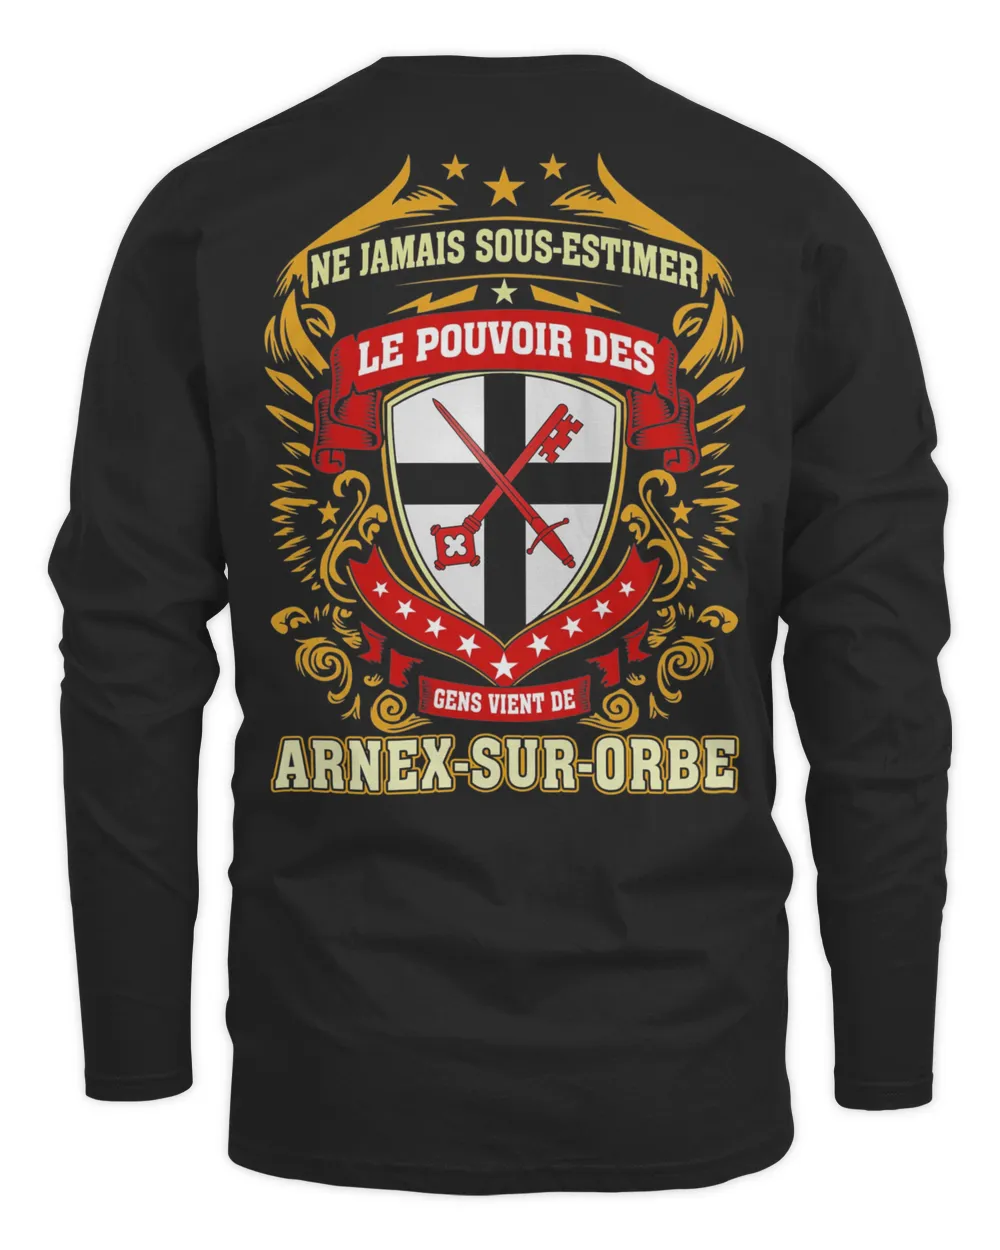 Ne Jamais Sous-estimer Le Pouvoir Des Gens Vient De Arnex-Sur-Orbe Shirt